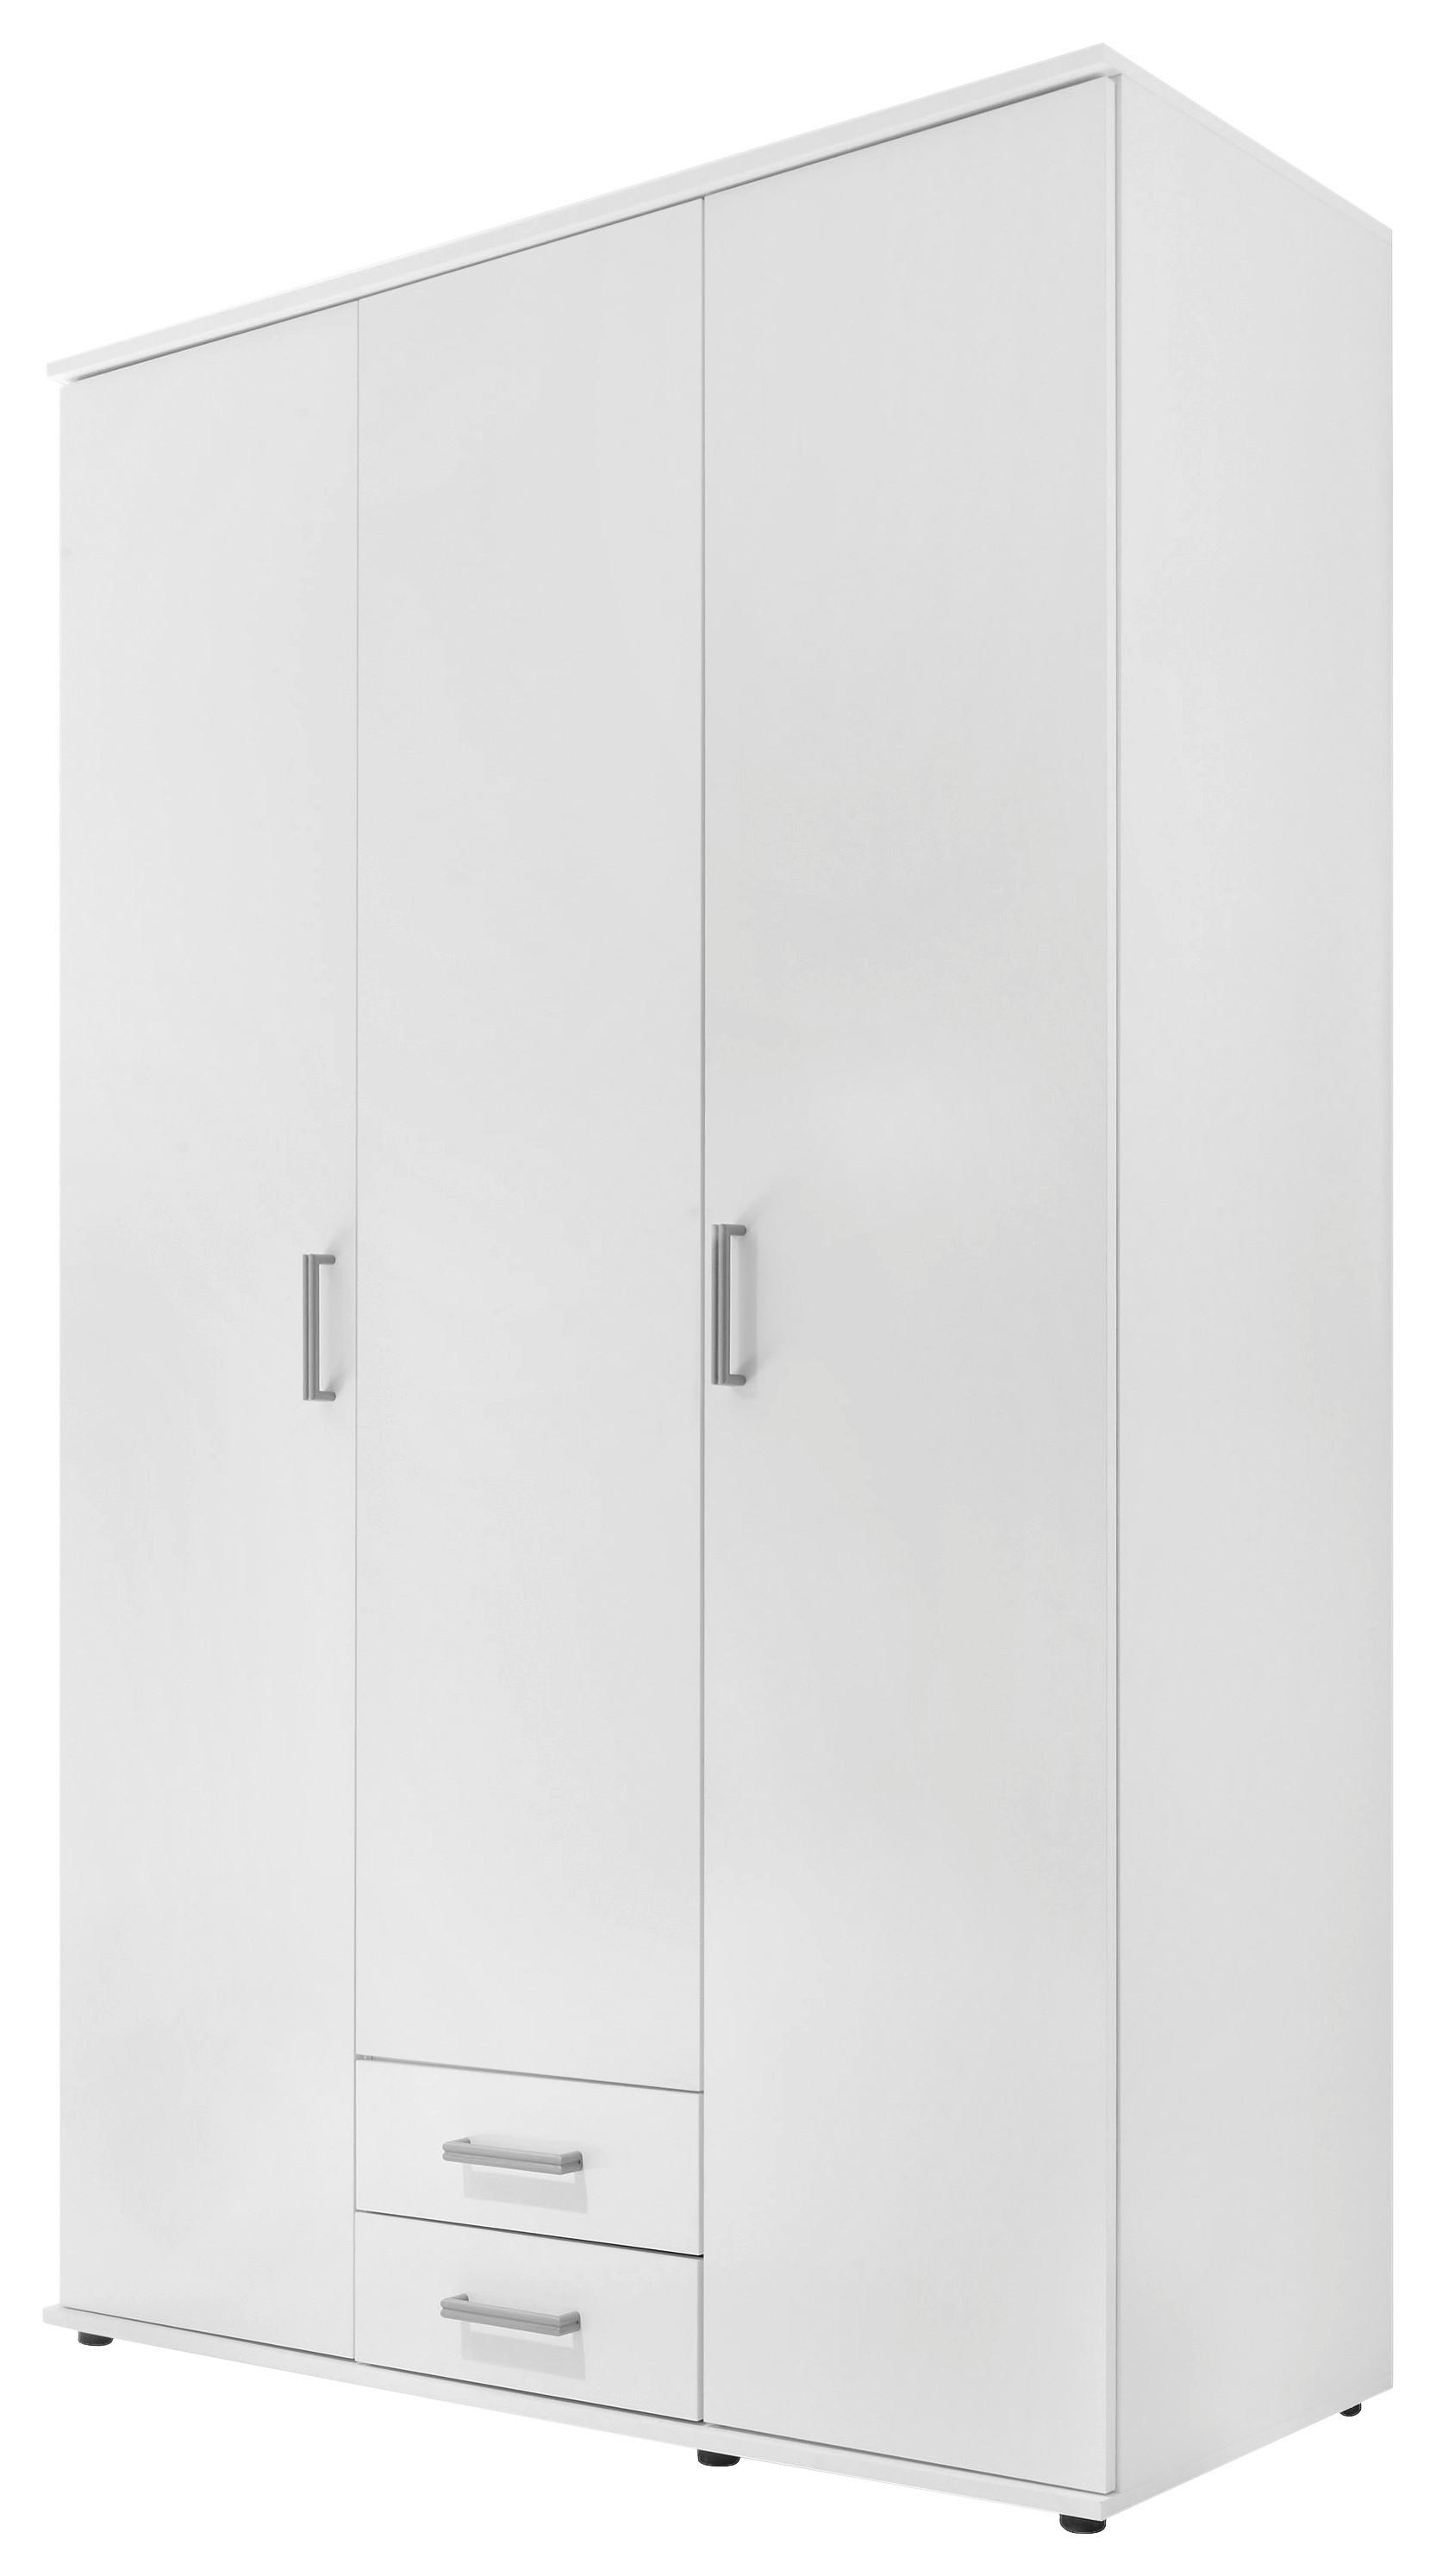 Drehtürenschrank in Weiß - Alufarben/Weiß, KONVENTIONELL, Holzwerkstoff/Kunststoff (119,6/196,3/53,5cm) - Modern Living